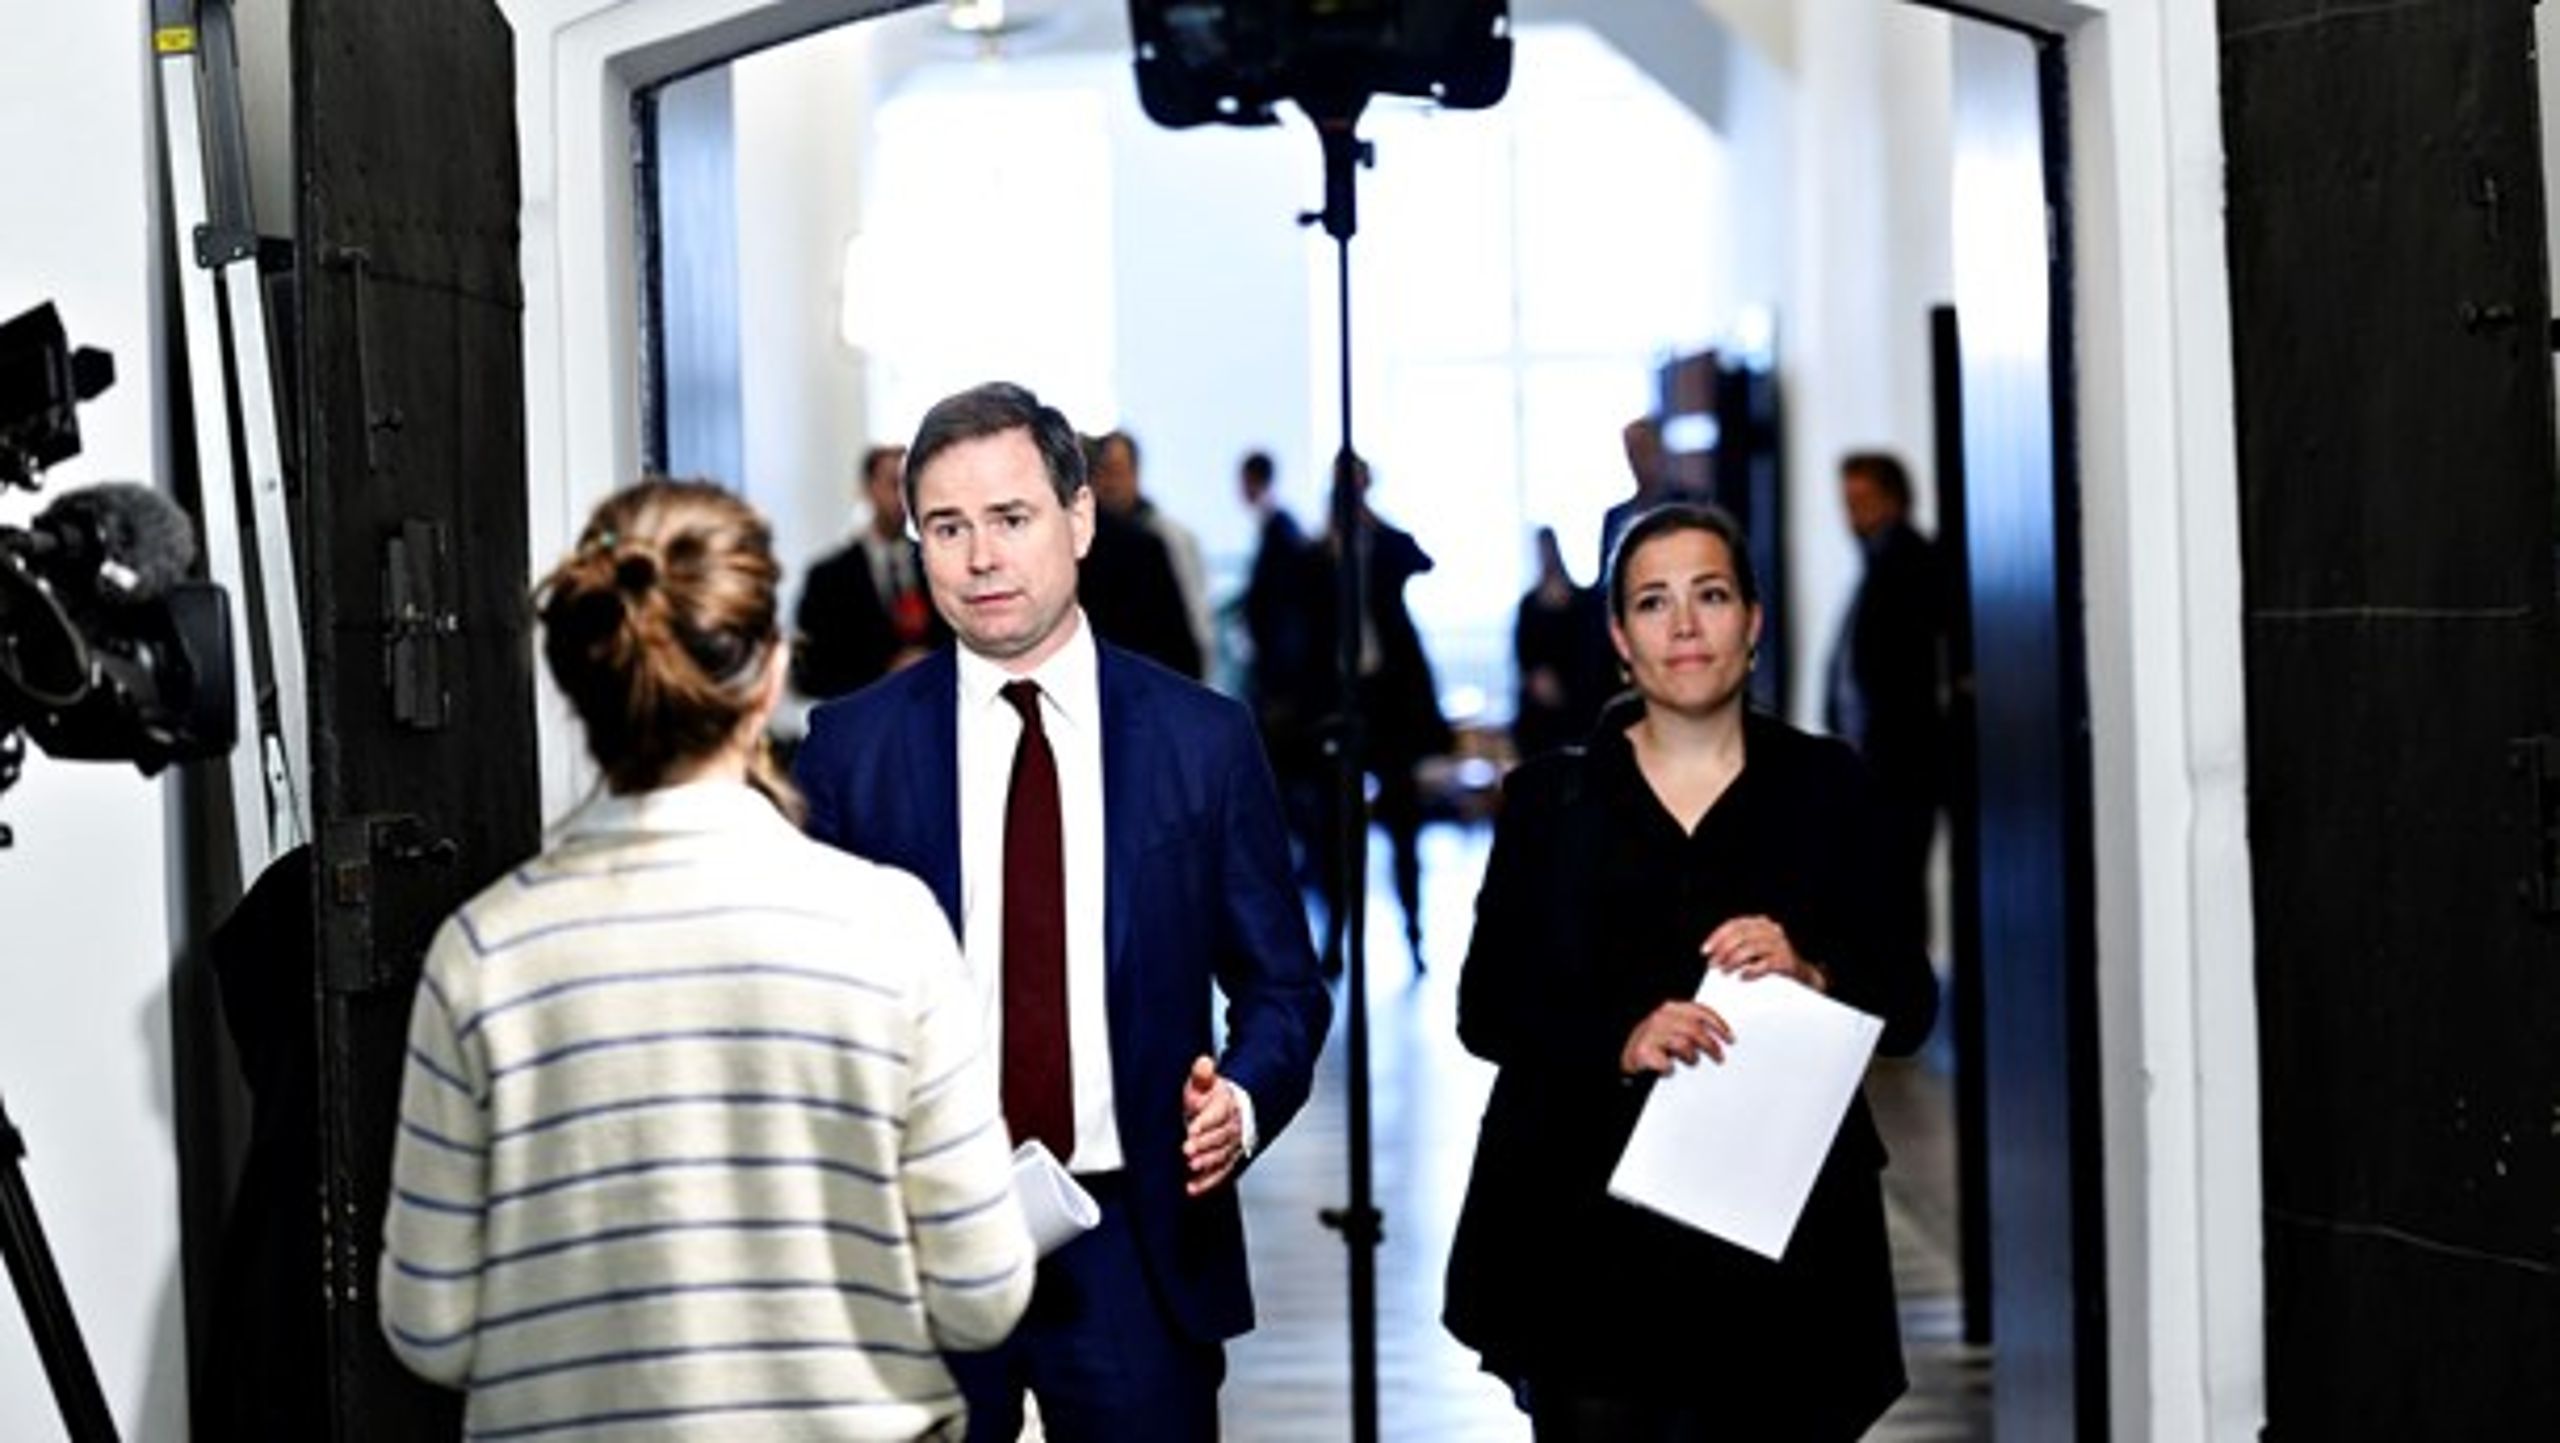 Finansminister Nicolai Wammen (S) indledte mandag økonomiforhandlinger med KL og Danske Regioner uden at kende sit eget finanspolitiske råderum.